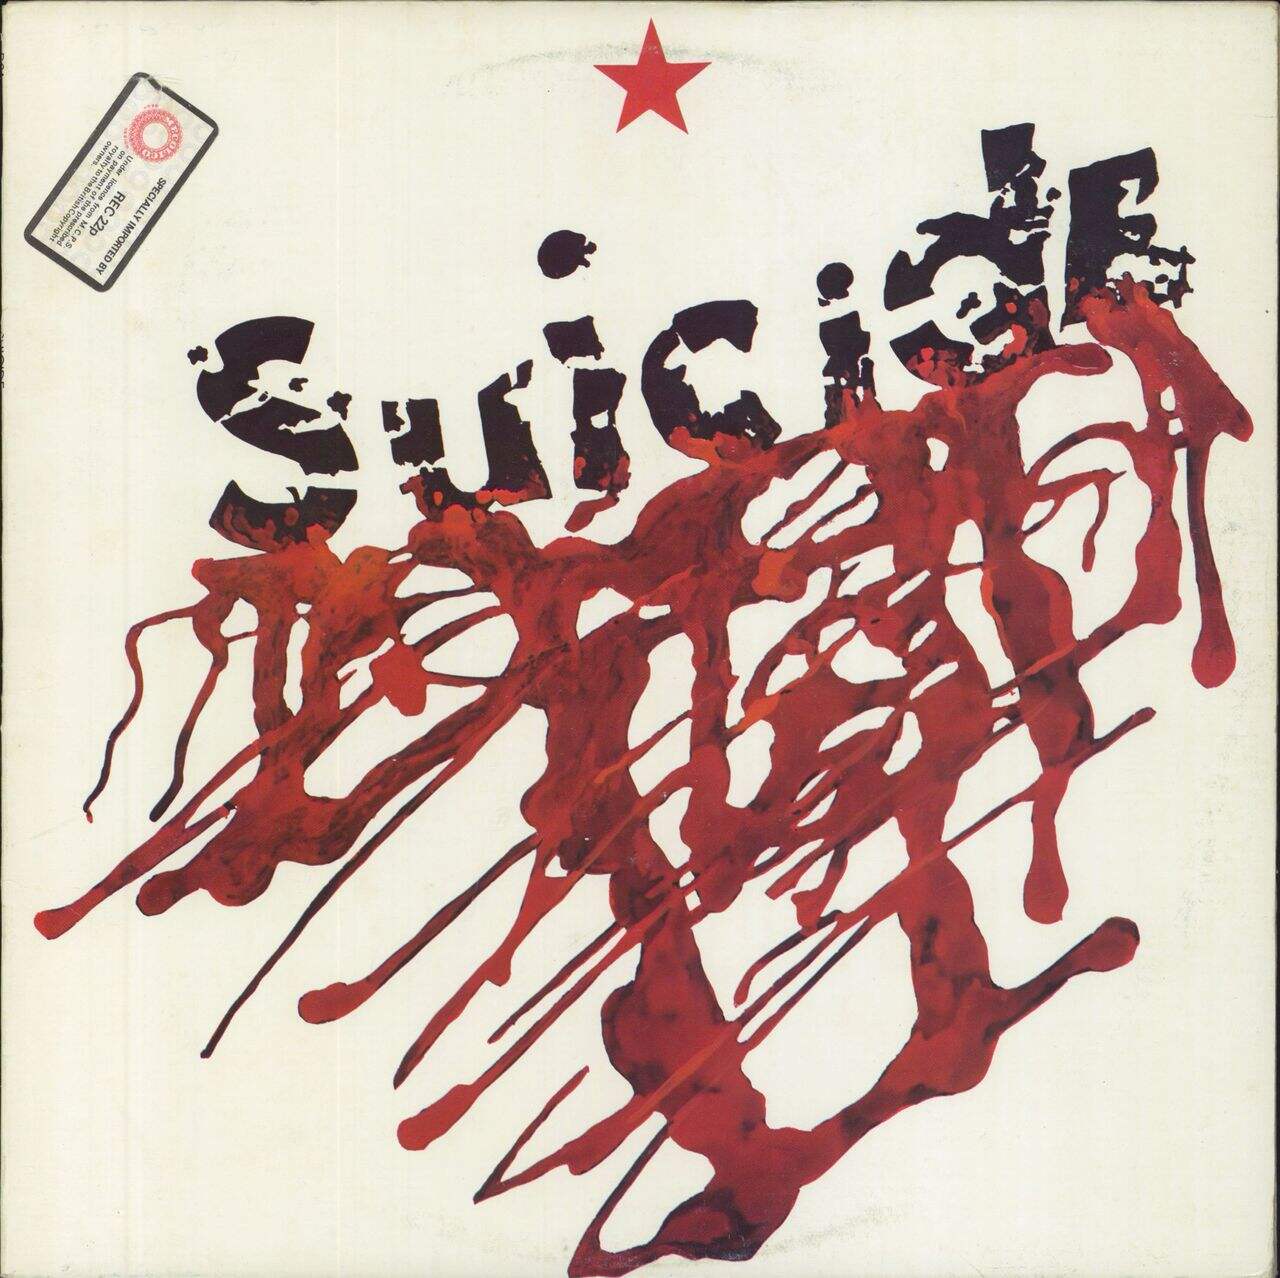 Suicide Suicide - 1st US Vinyl LP